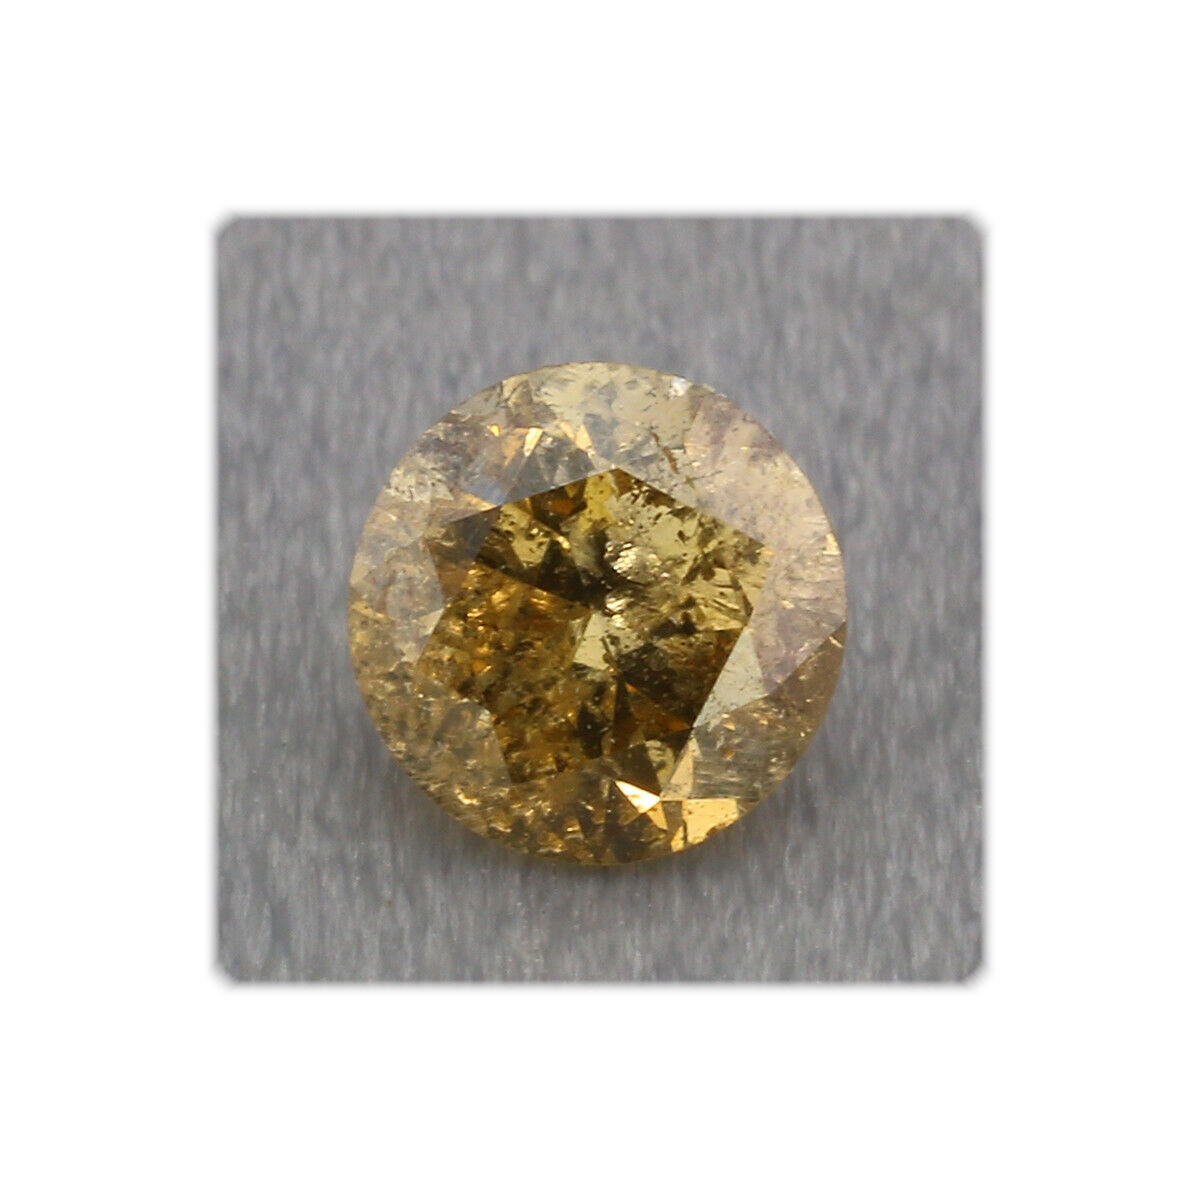 Diamant facettiert / rund / 4,2 mm / 0,29 ct. / Farbe gelbbraun